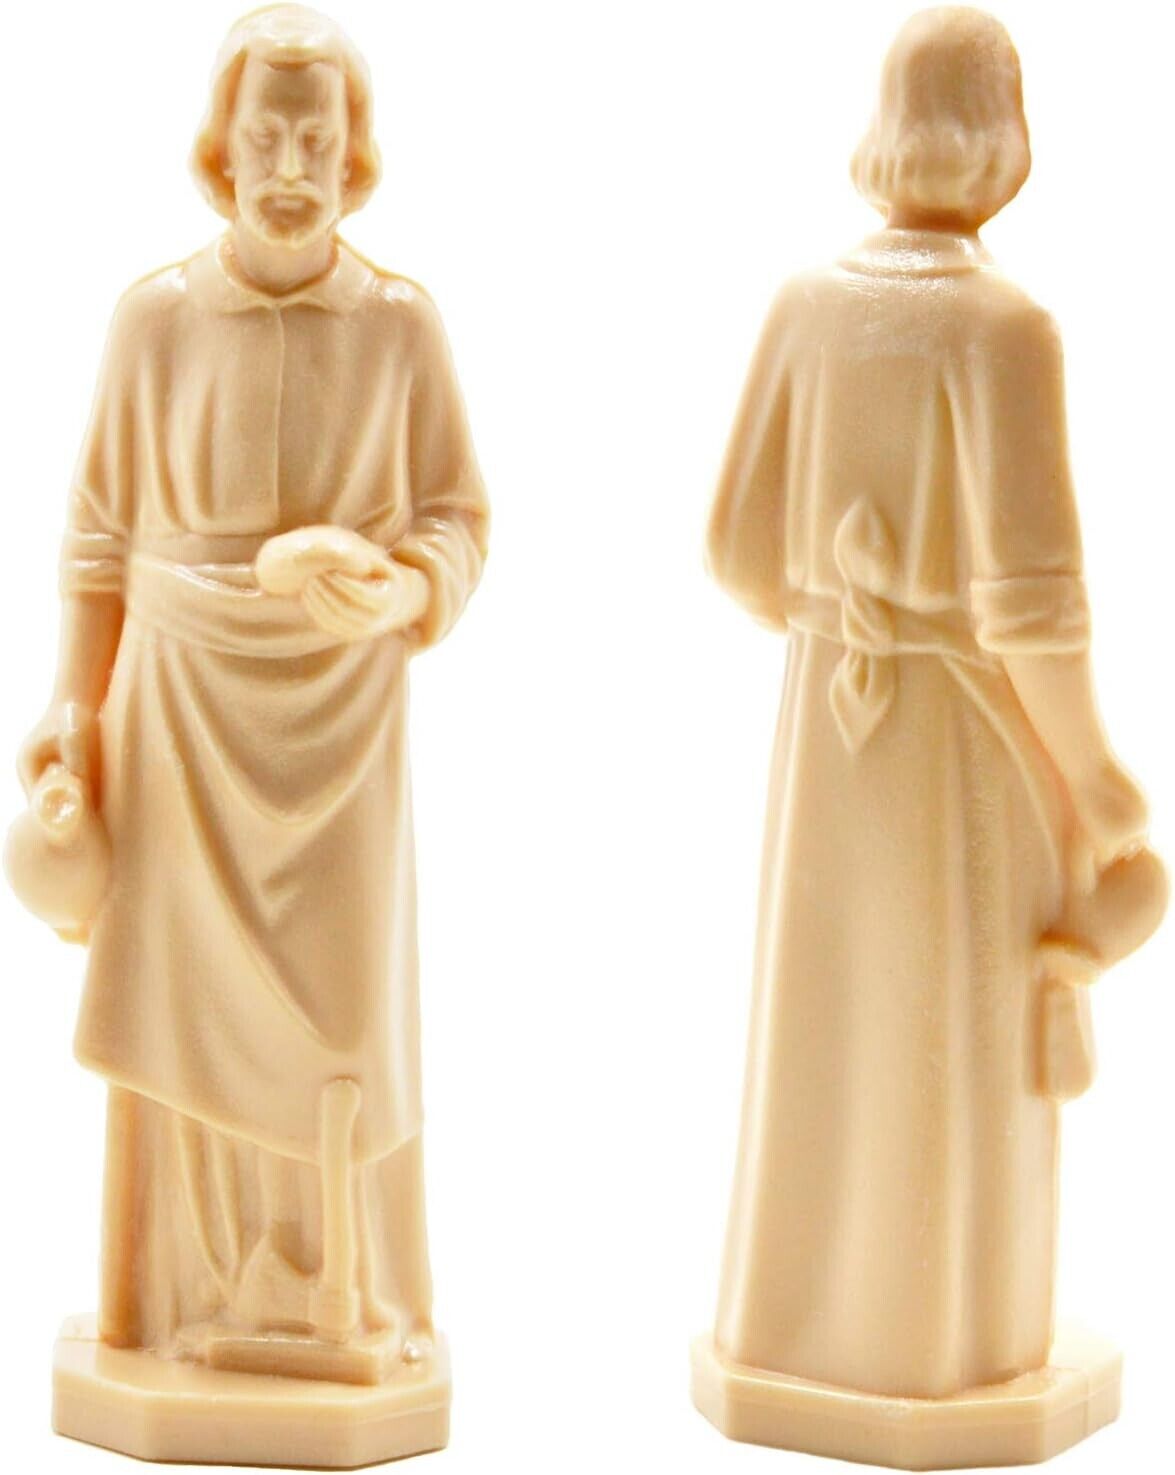 St. Joseph Statue for Selling House Saint Joseph Home Selling Kit & Prayer Card